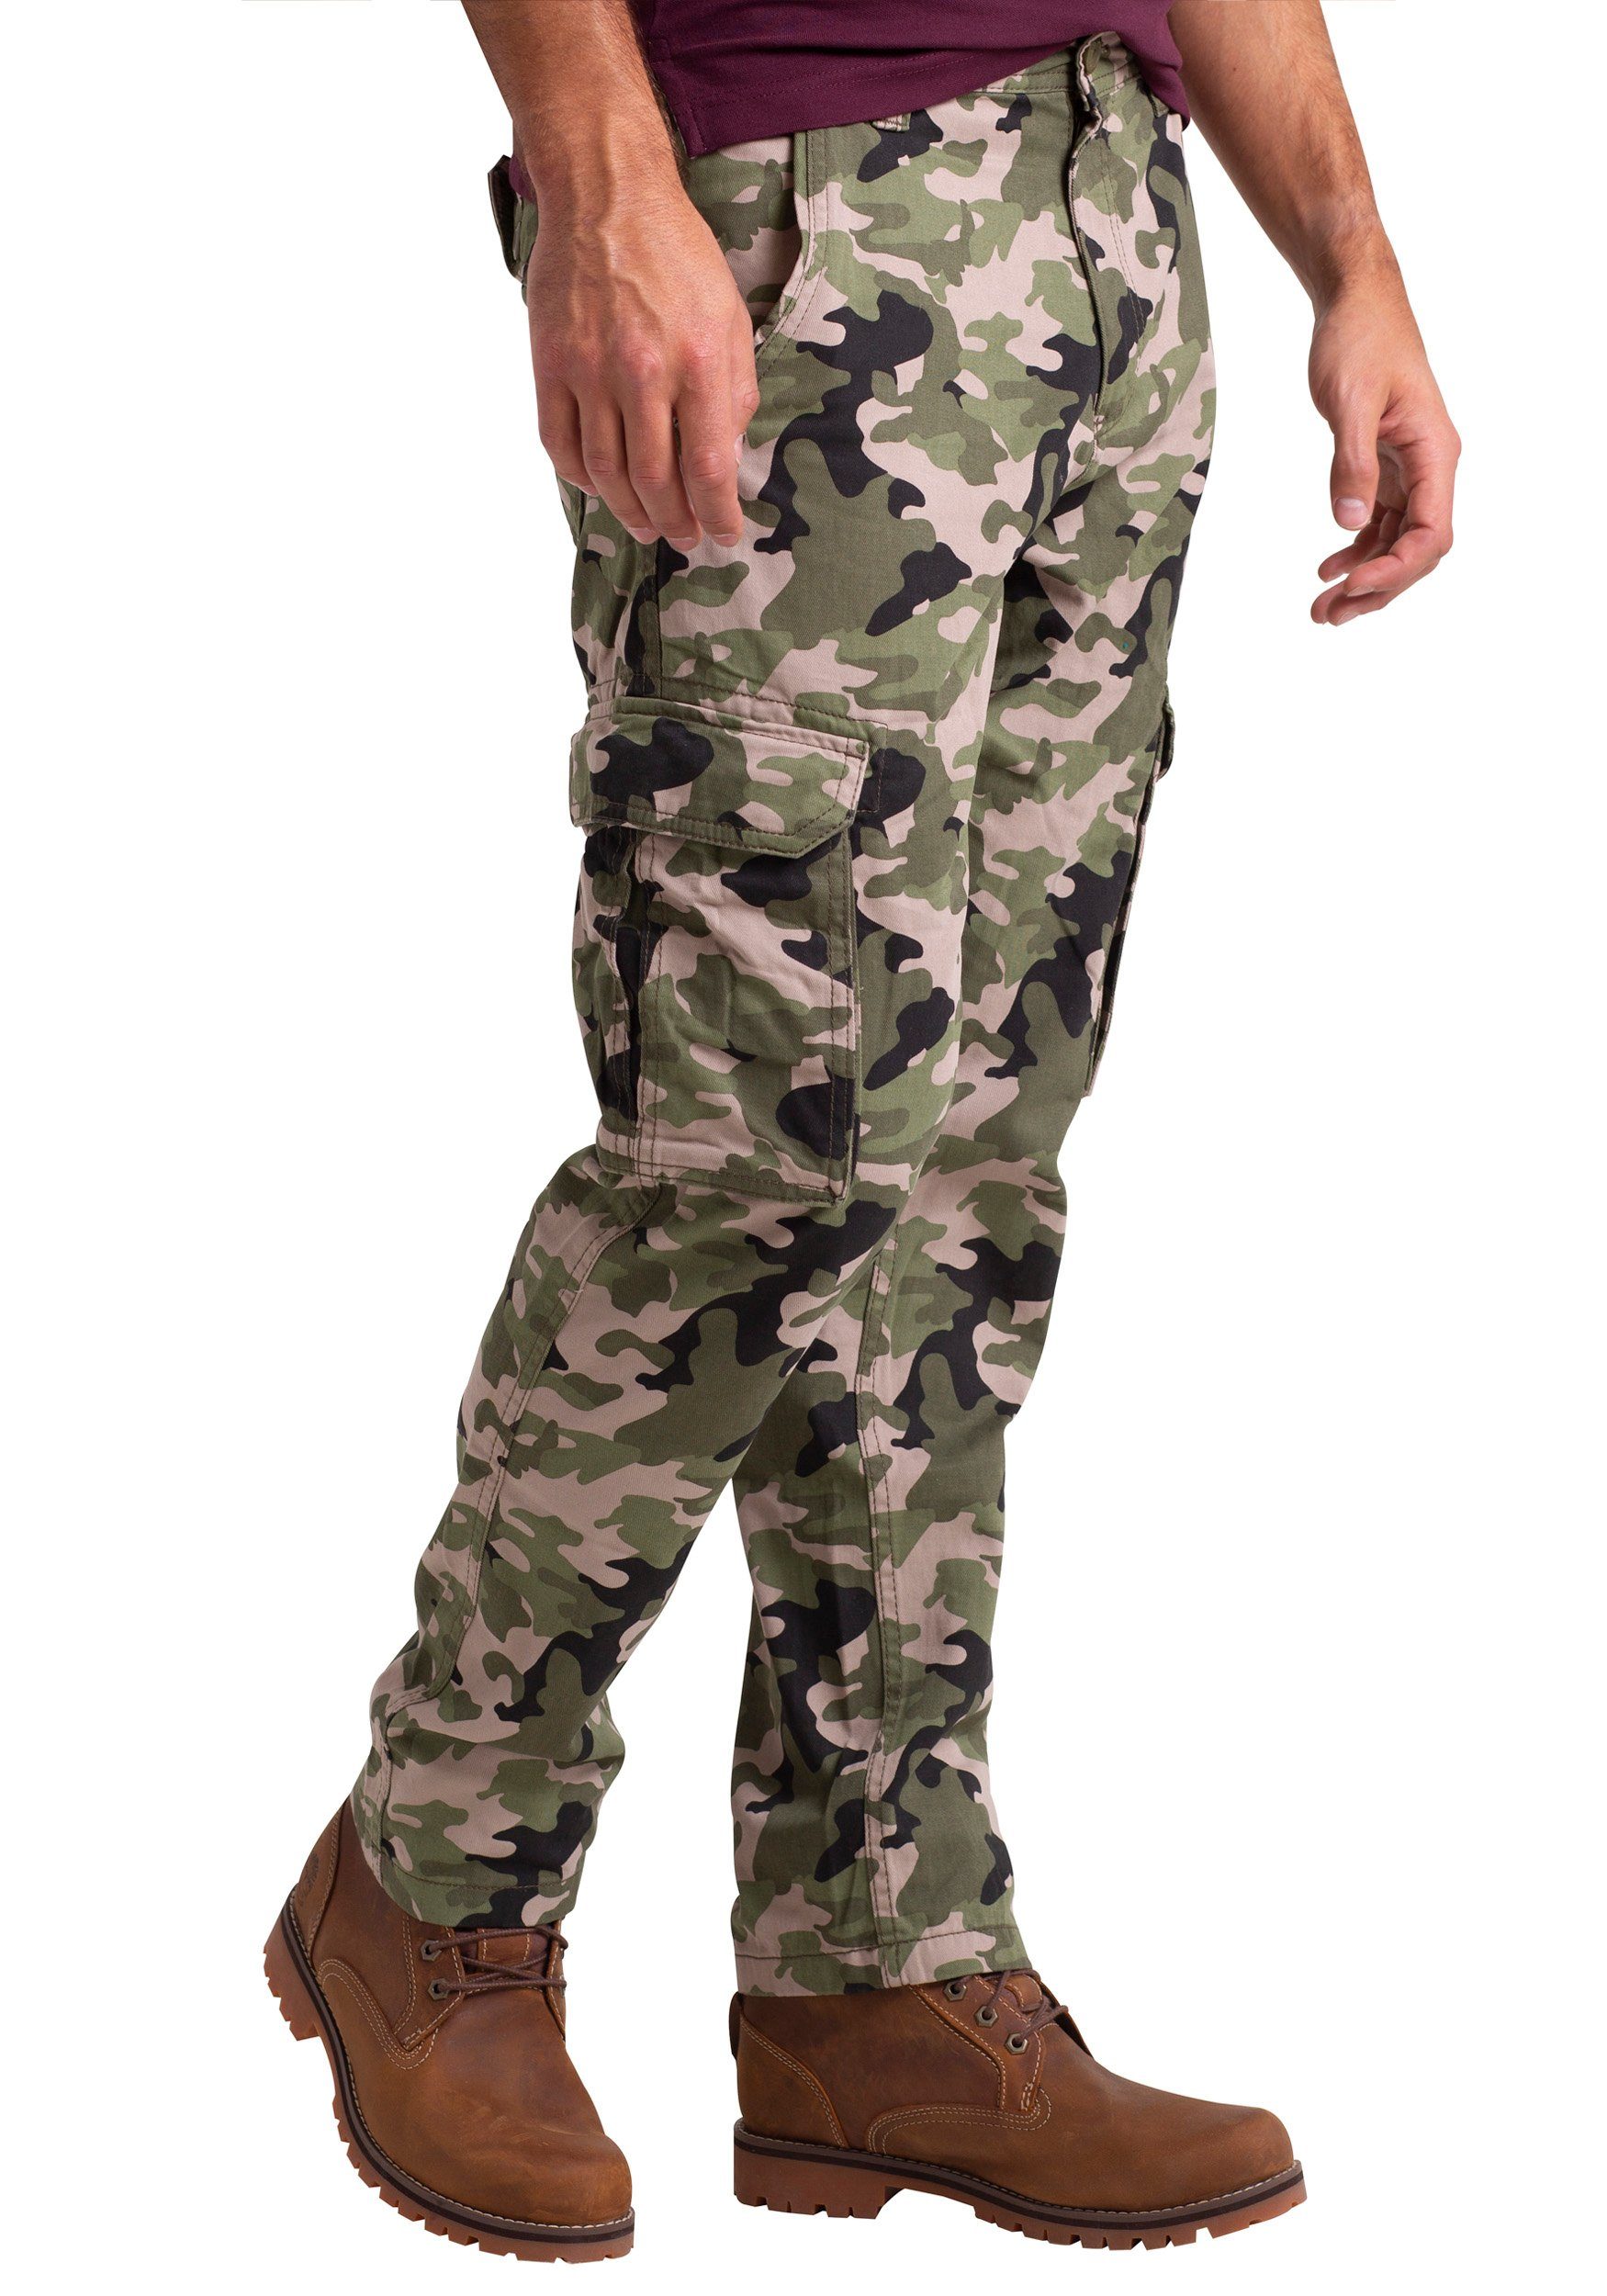 Bein Army Baumwolle Mens Camouflage Cargo BlauerHafen Camo gerades Cargohose Oliv Hose Arbeitskleidung